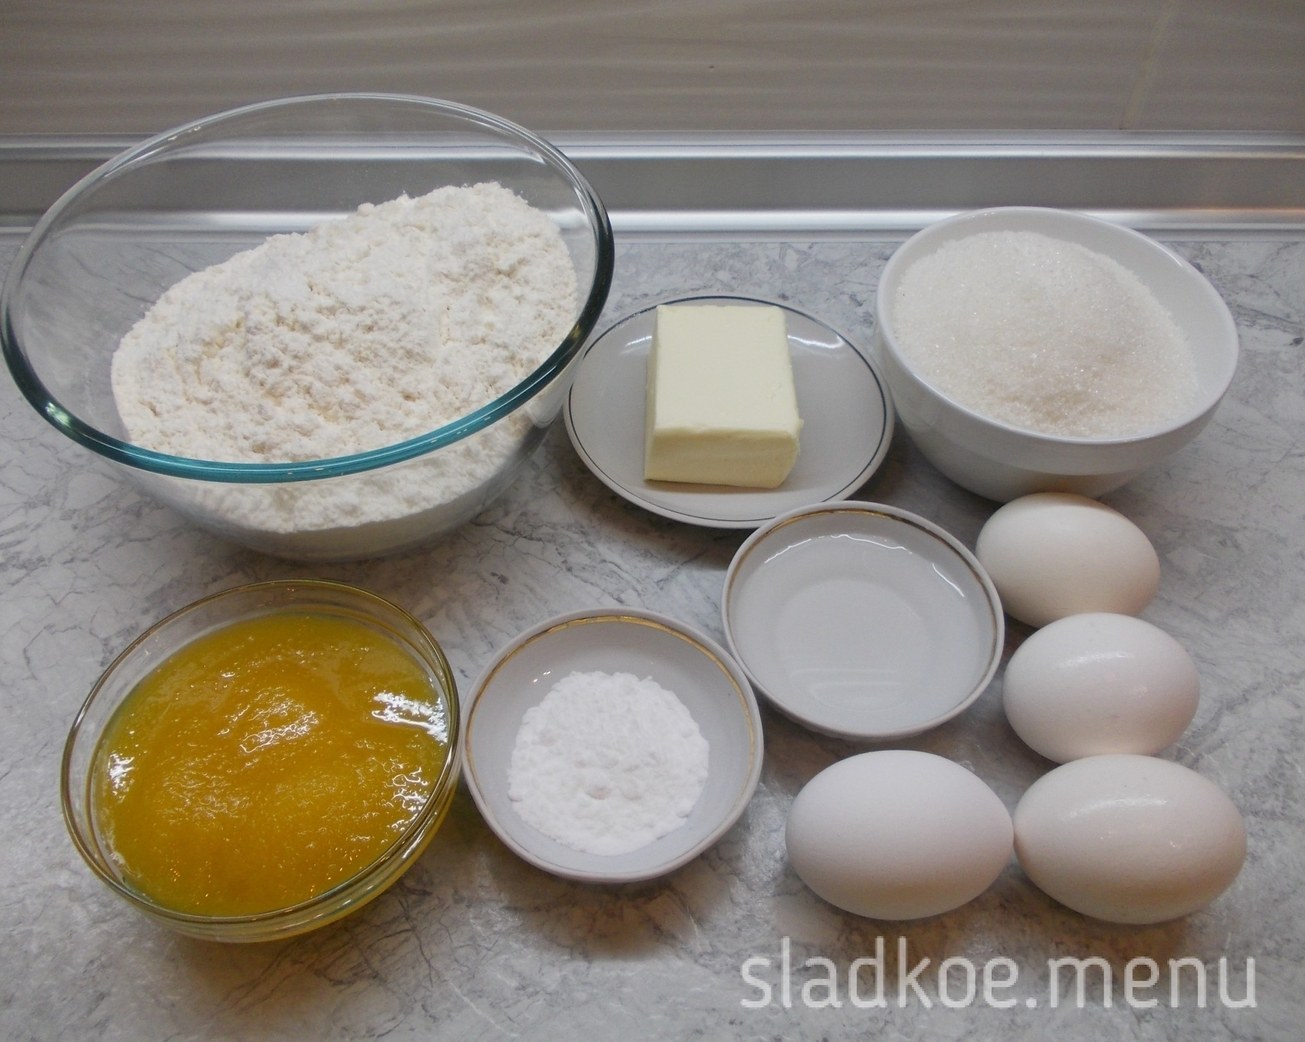 Творог масло сливочное яйца сахар сливочное. Ингредиенты для теста. Мука яйца сахар. Ингредиенты для торта. Яйца масло мука сахар.